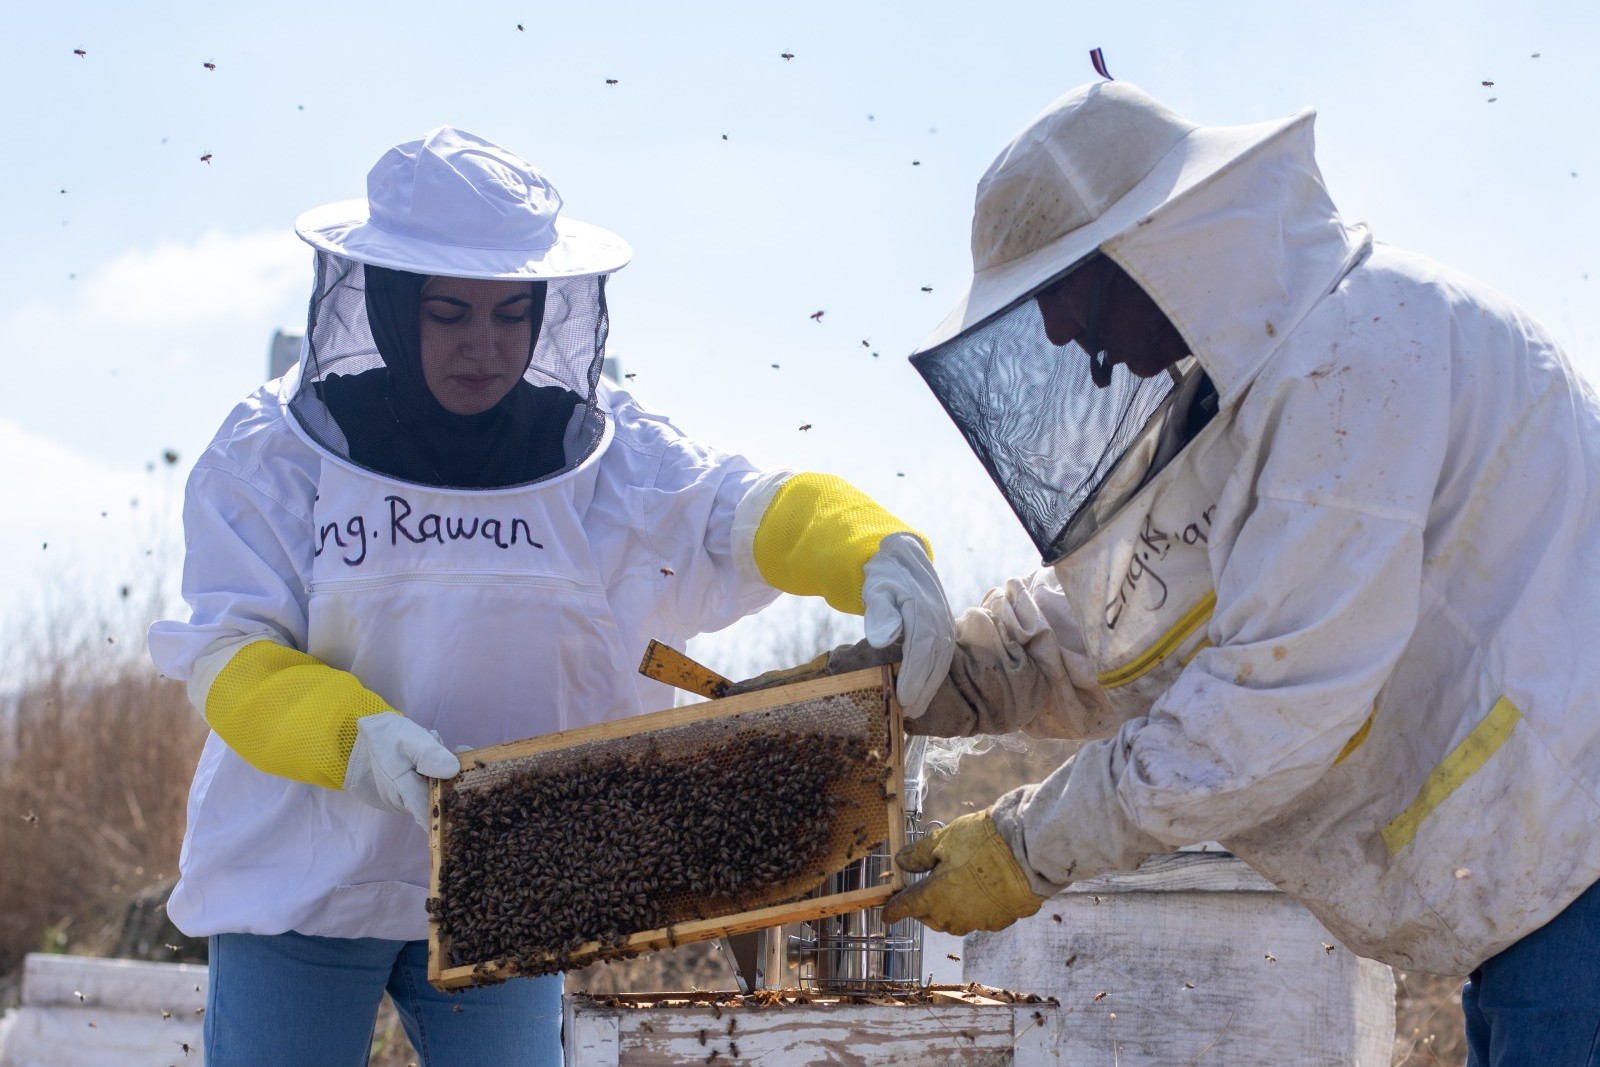 Die Imkerin Rawan Fayyad und ein anderer Imker in Schutzanzügen nehmen einen Rahmen aus einem Bienenkasten.